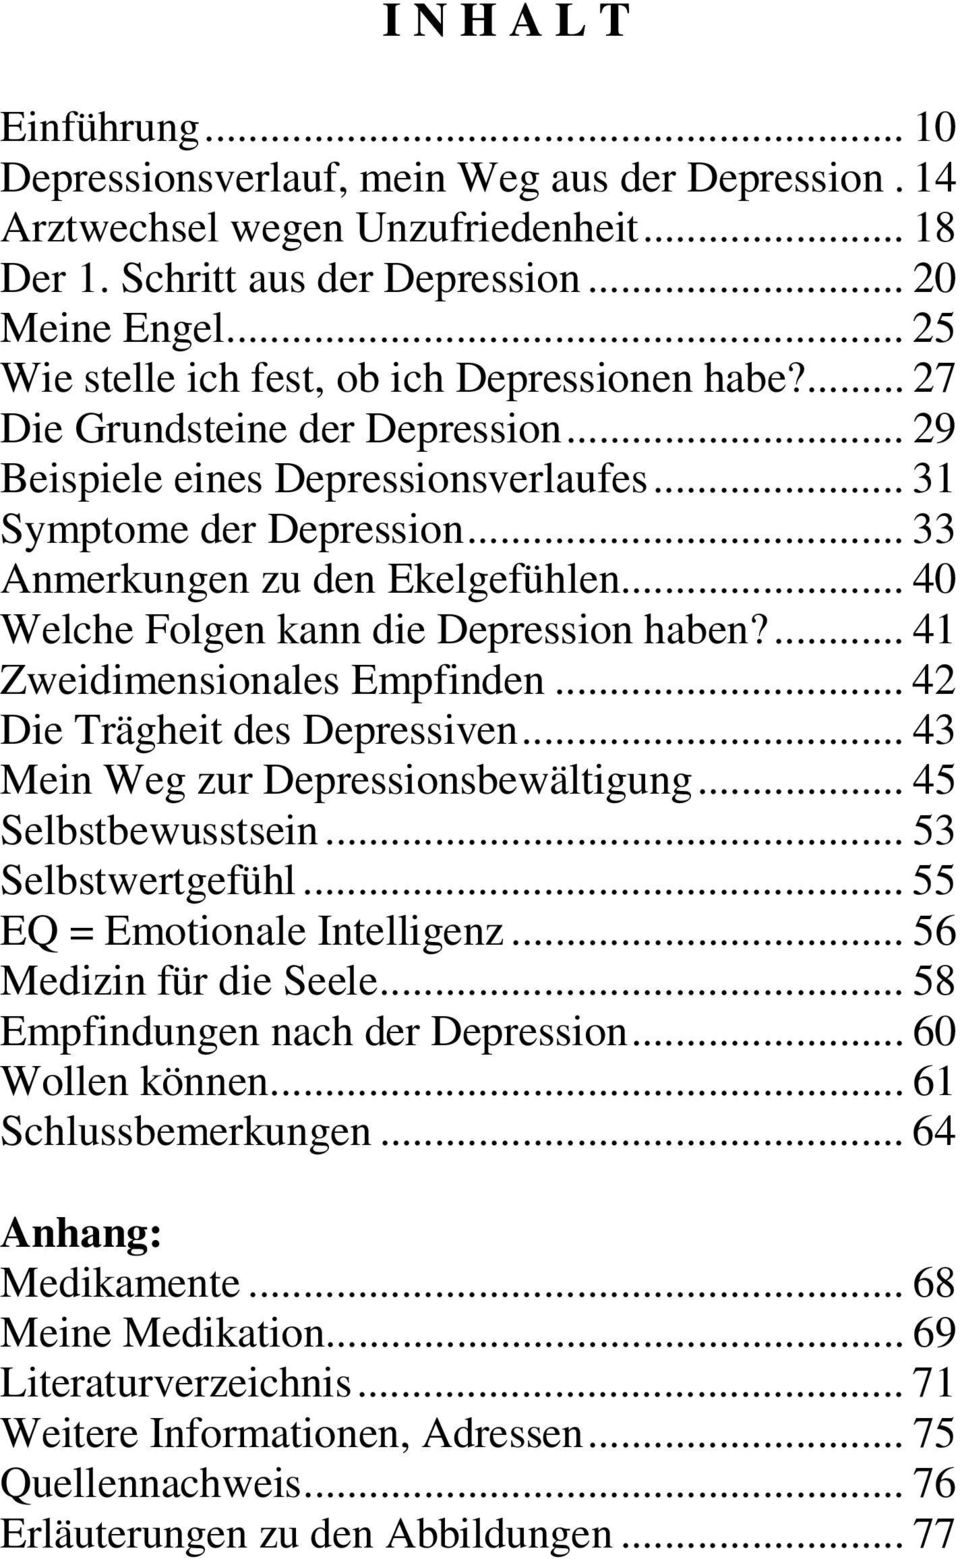 .. 40 Welche Folgen kann die Depression haben?... 41 Zweidimensionales Empfinden... 42 Die Trägheit des Depressiven... 43 Mein Weg zur Depressionsbewältigung... 45 Selbstbewusstsein.